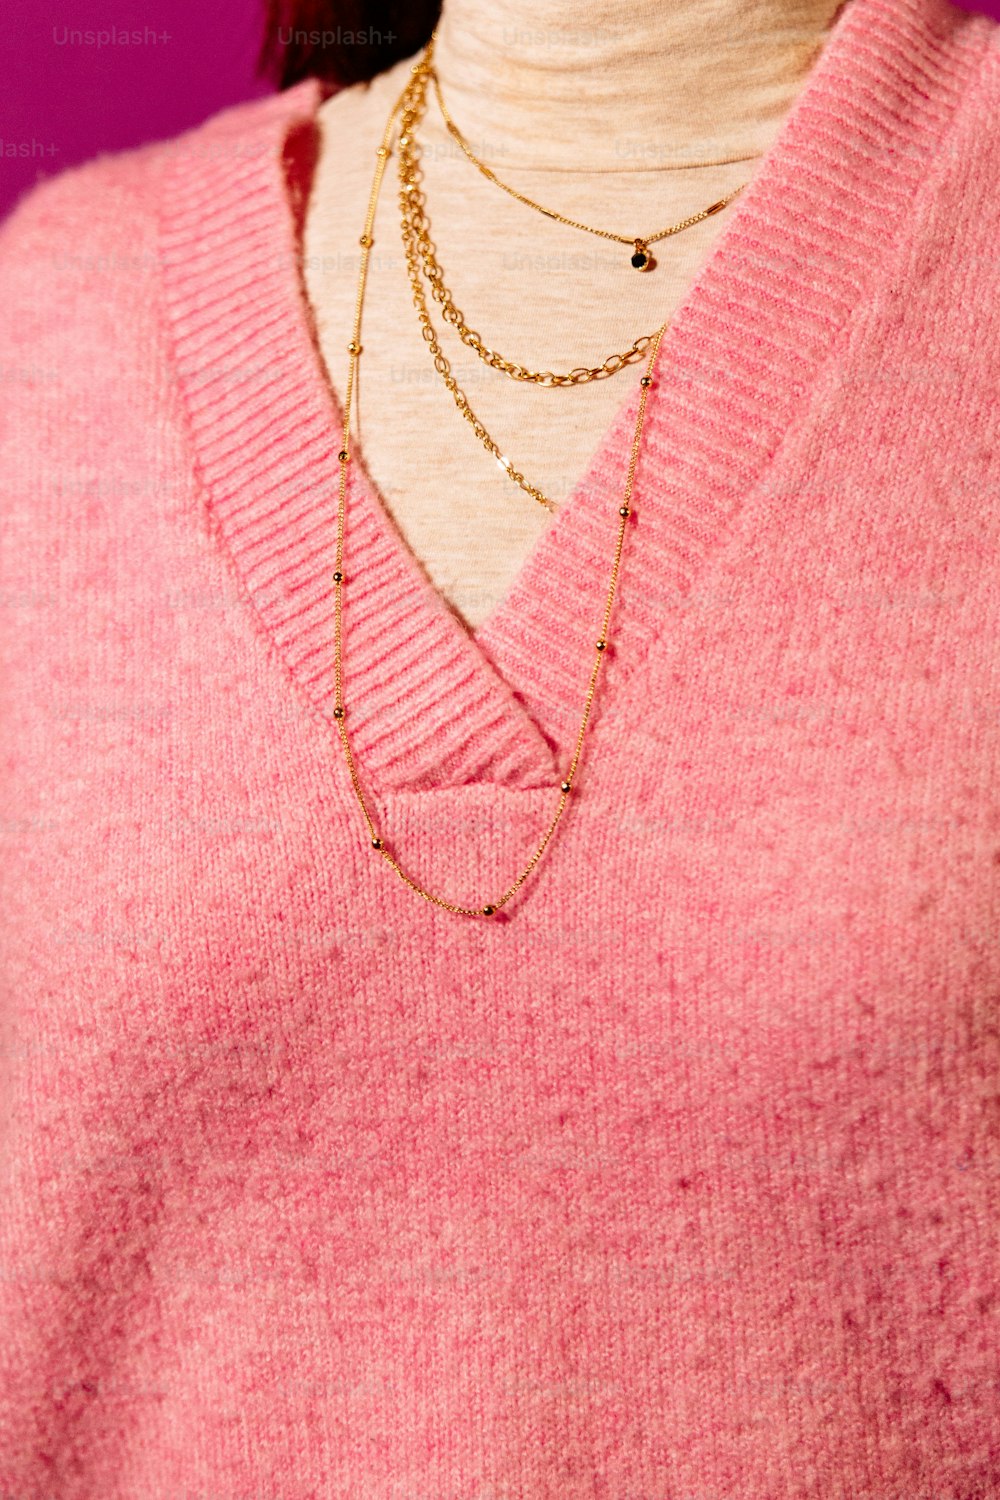 분홍색 스웨터를 입은 사람의 클로즈업